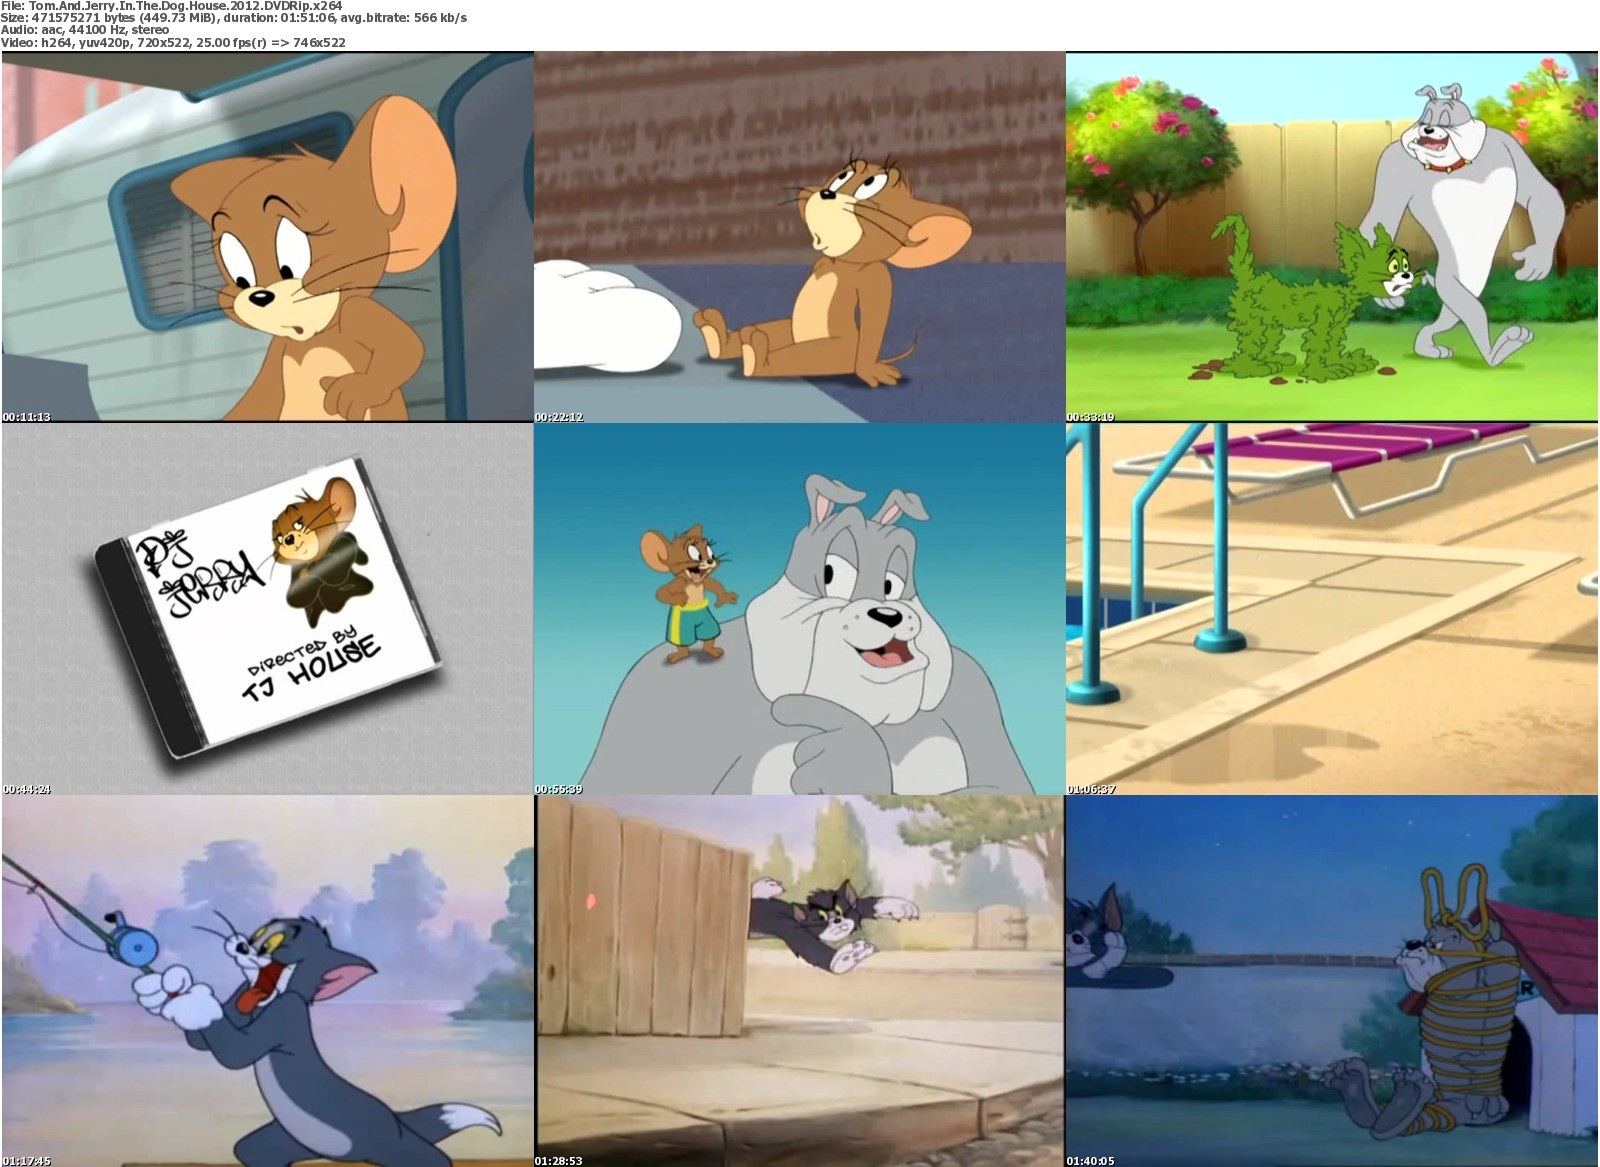 Tom And Jerry Cartoon 2012 New Full Movie